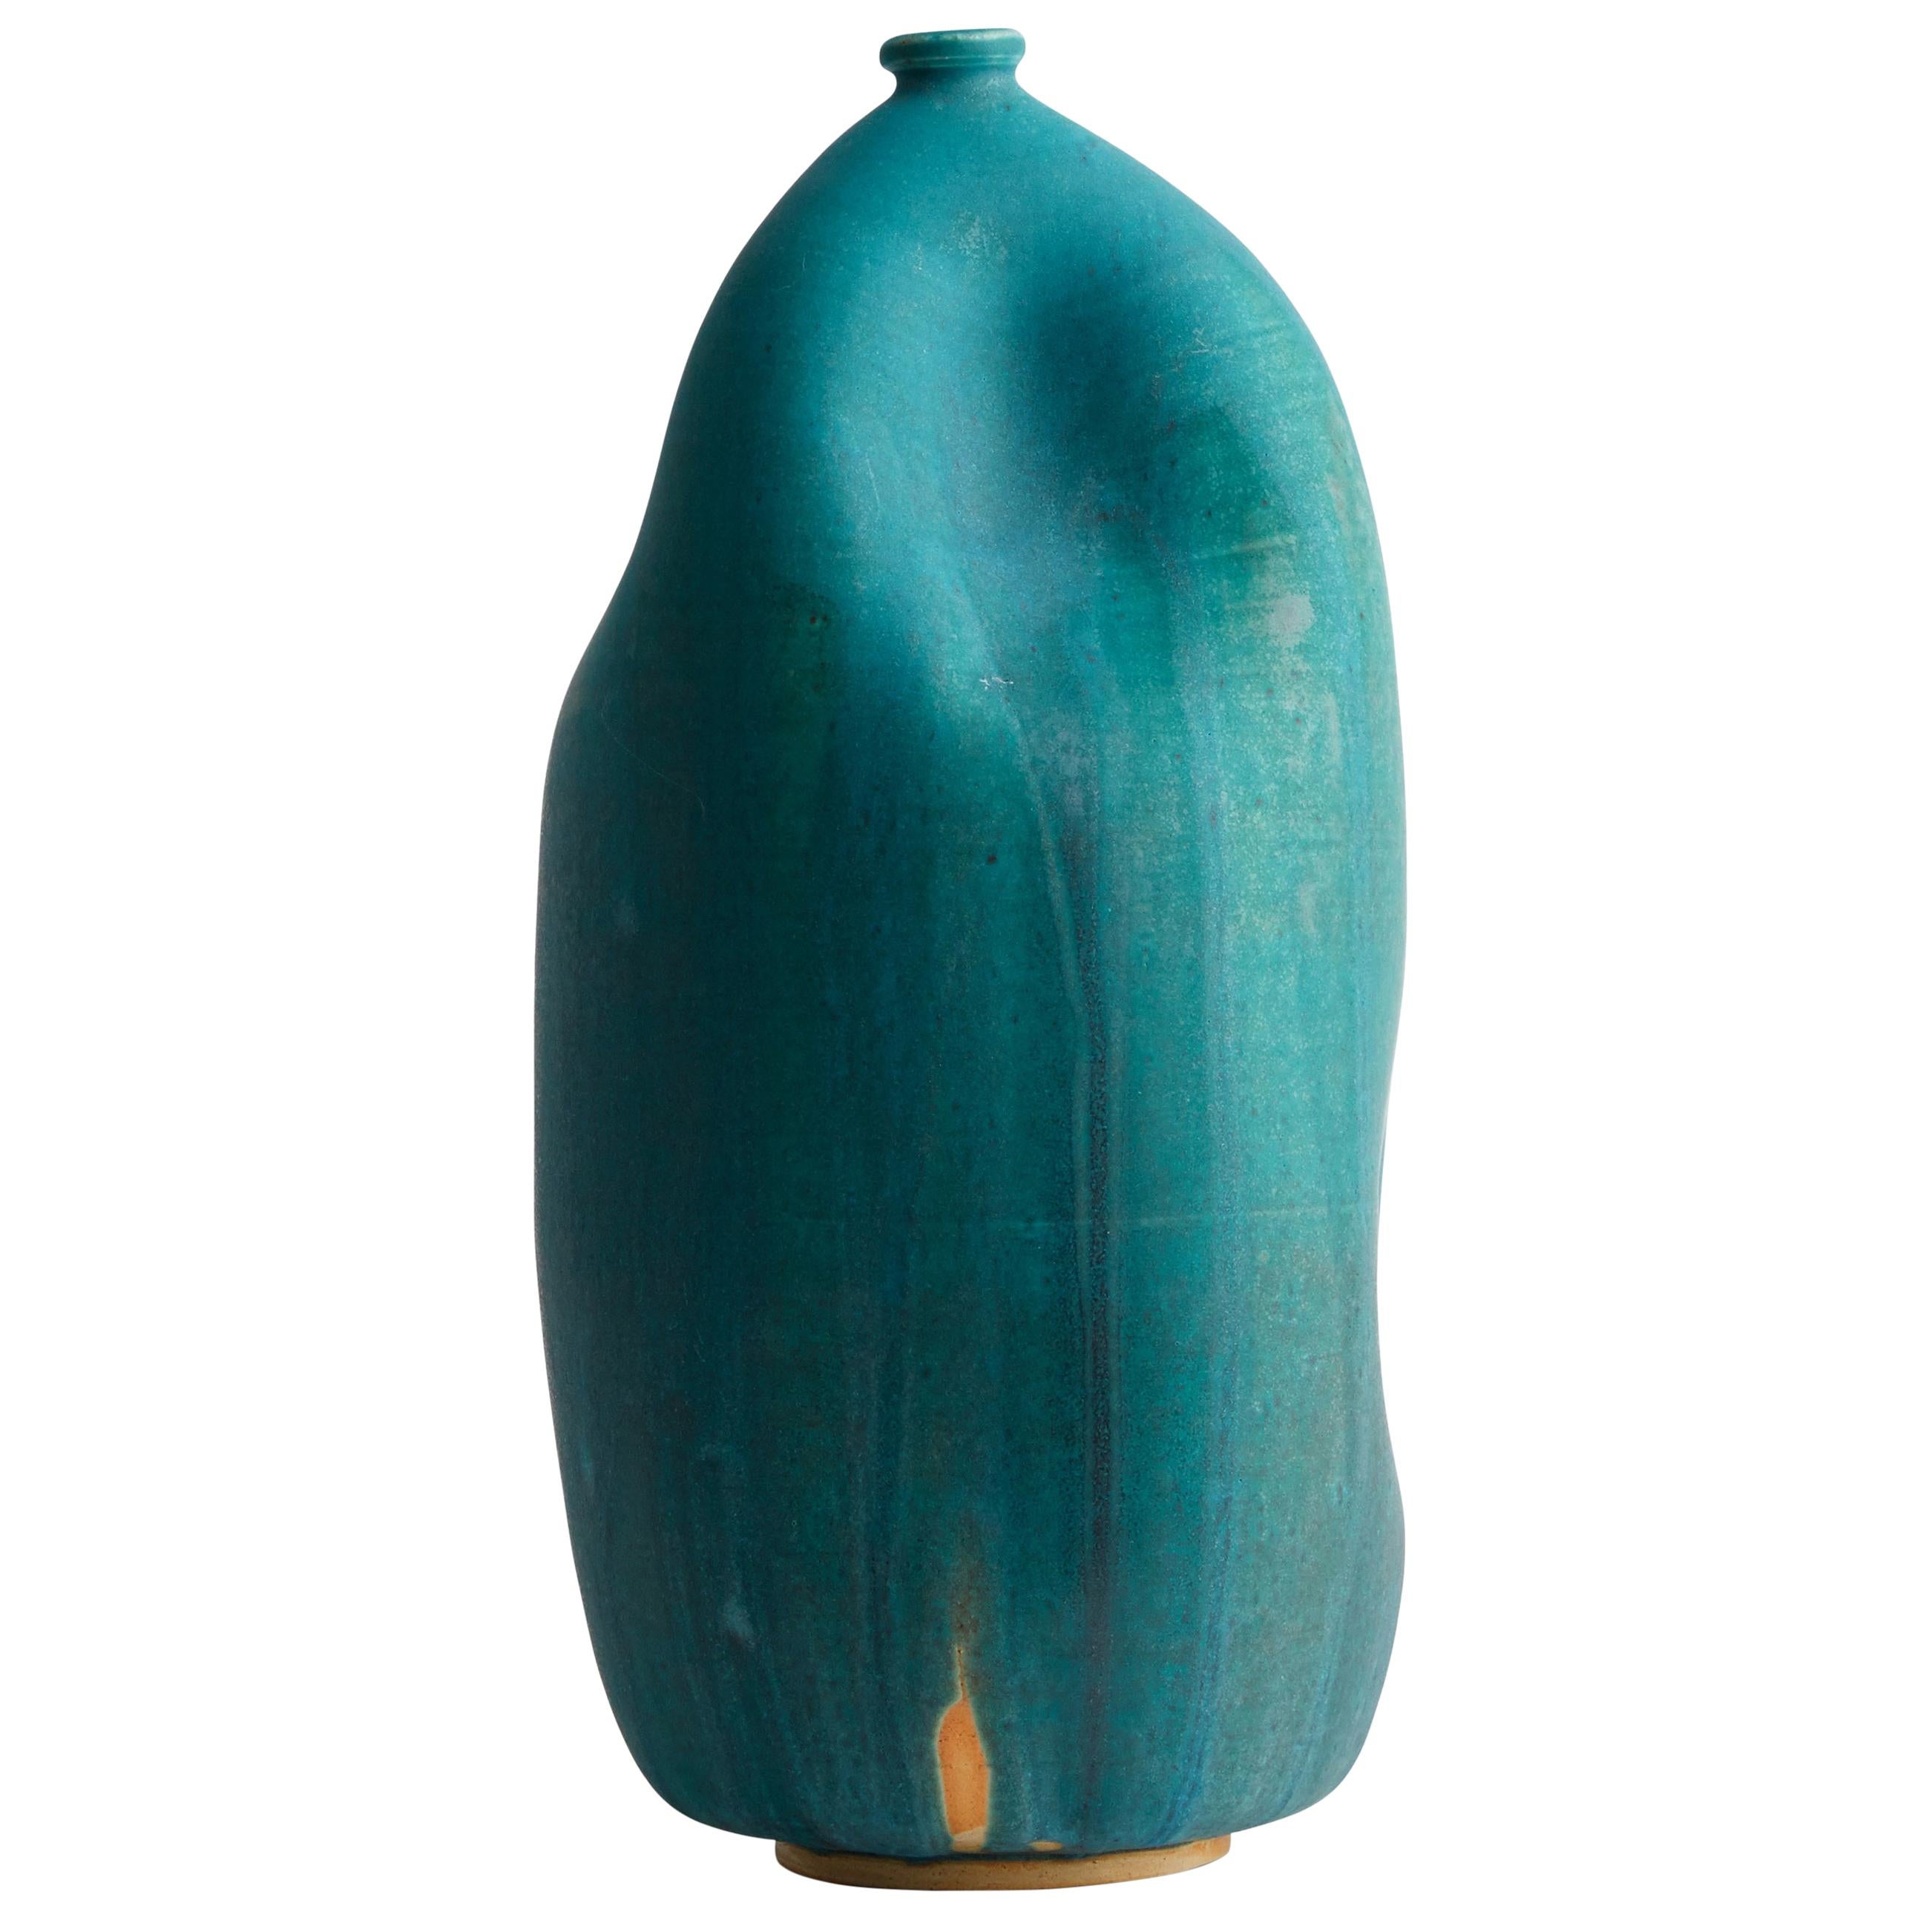 Turquoise Handmade Contemporary Ceramic Vase / Interior Sculpture / Wabi Sabi